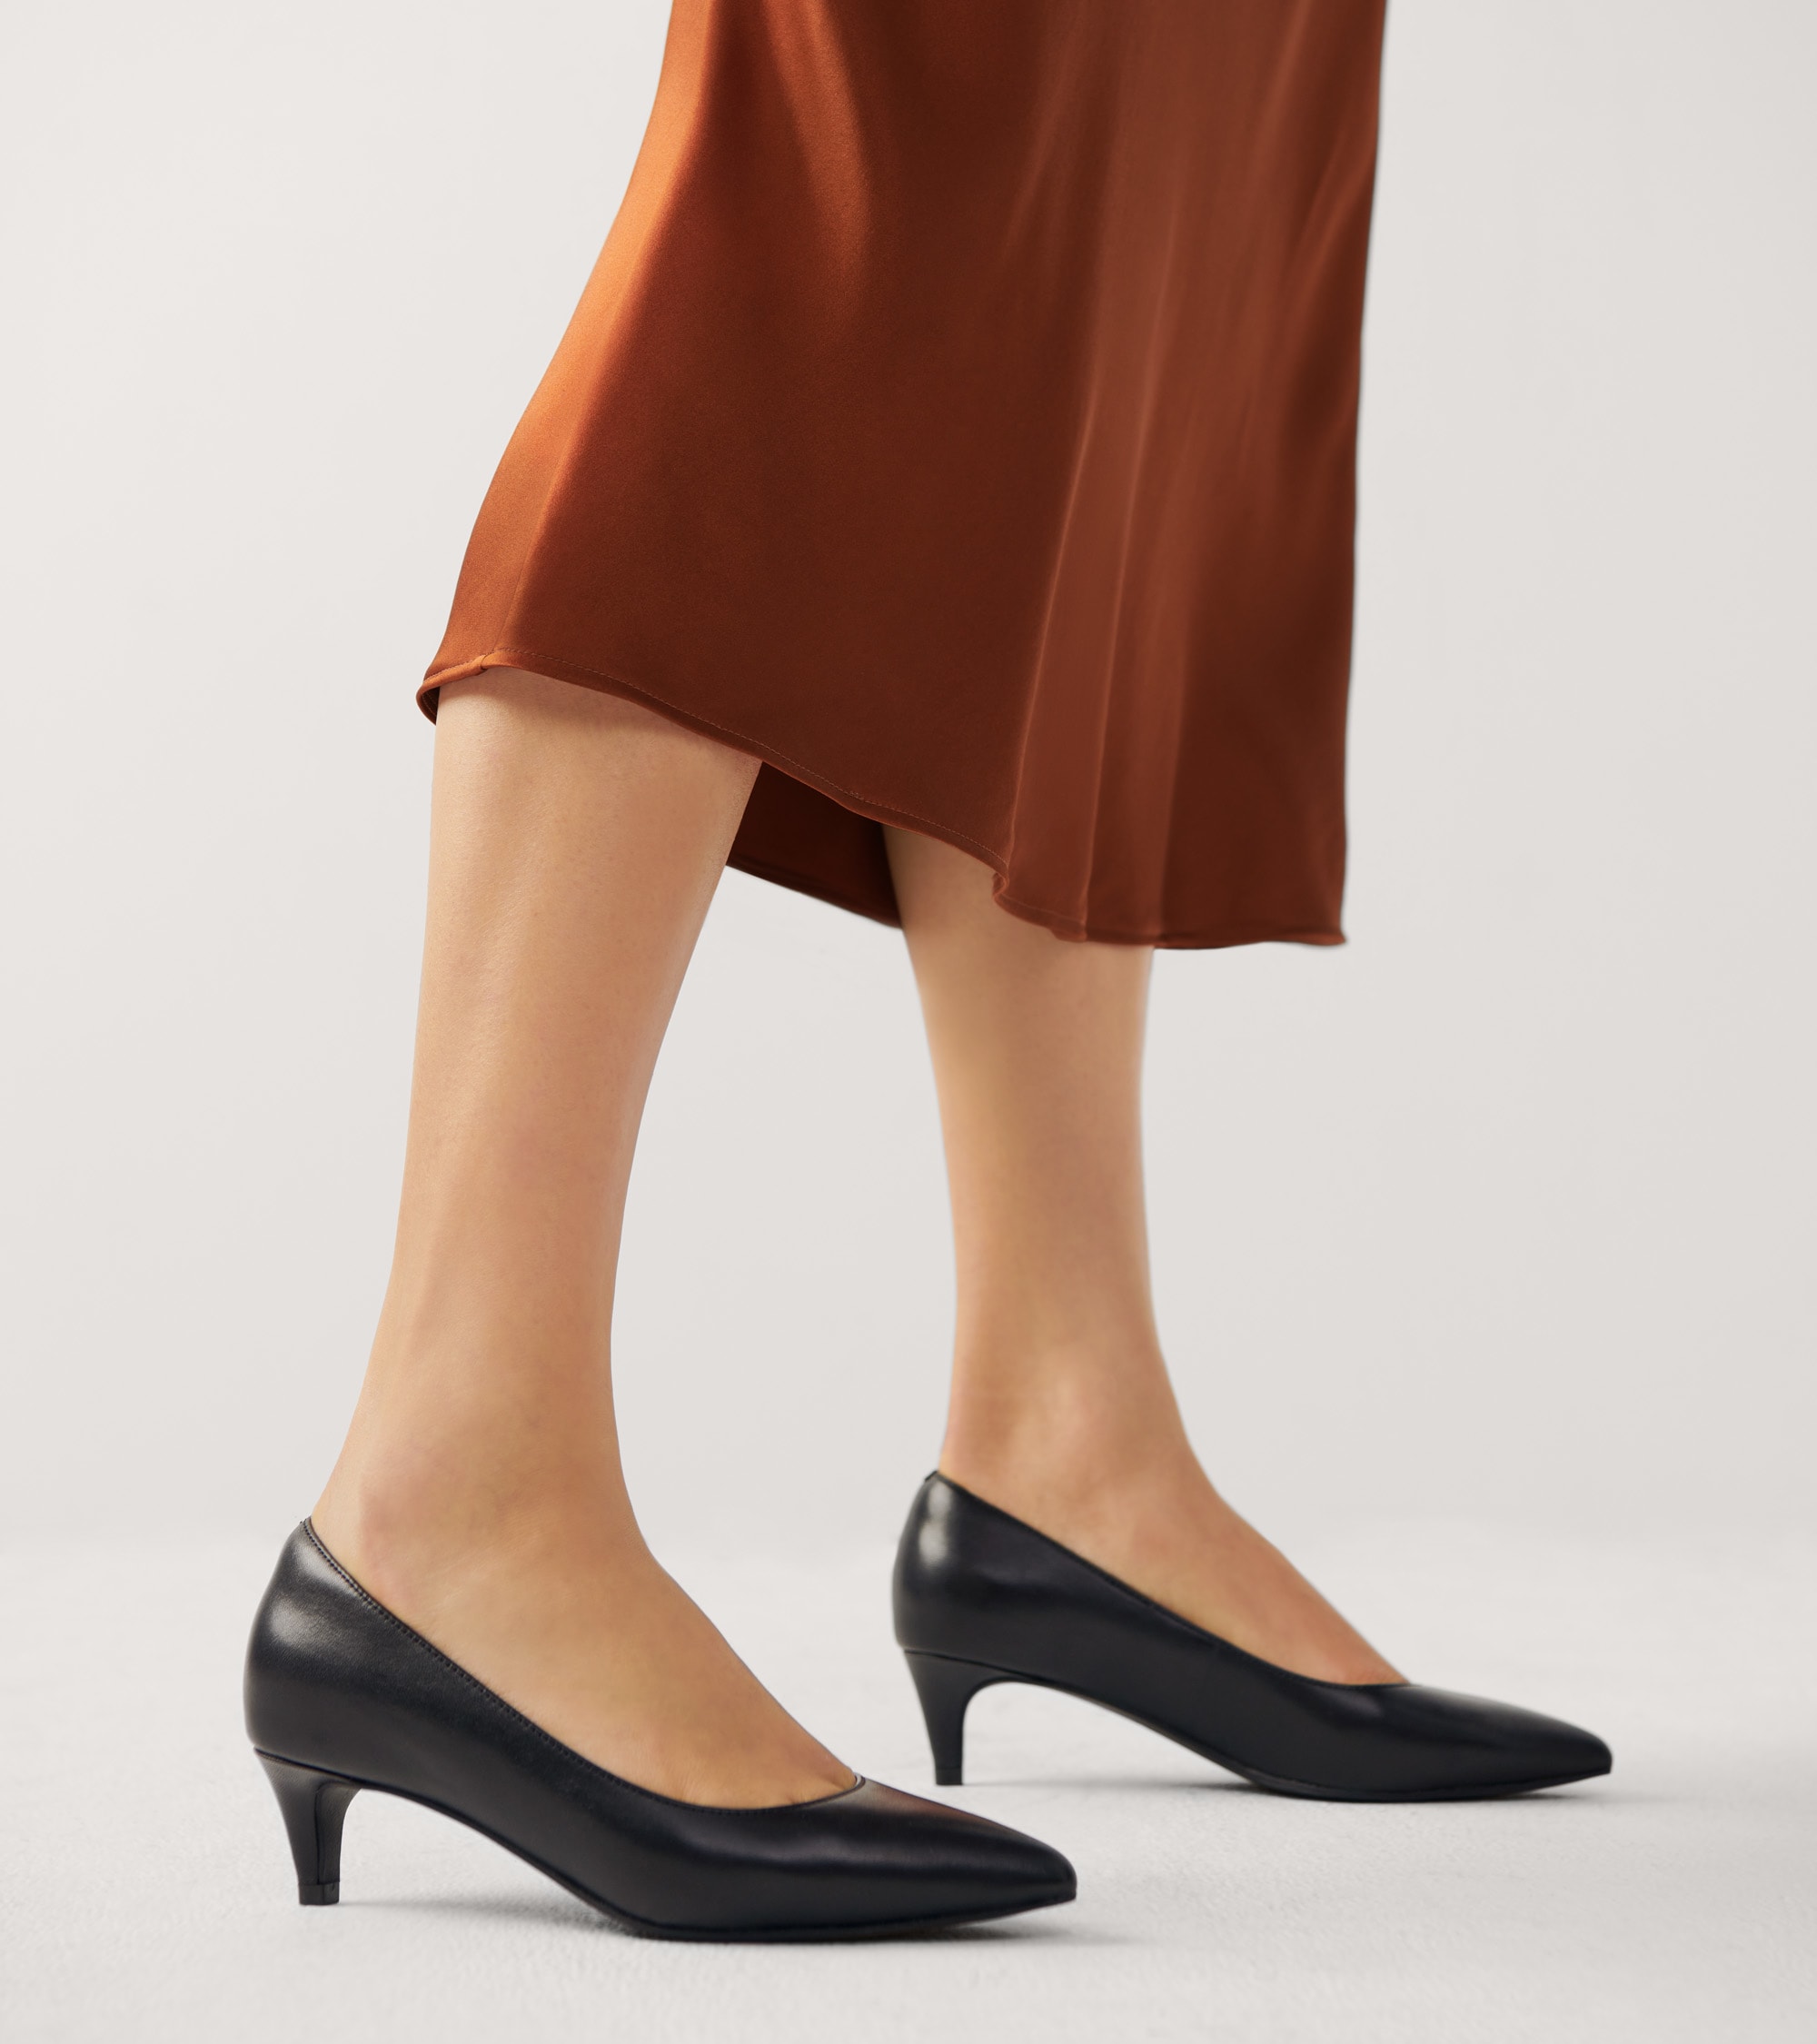 Female model wearing heels